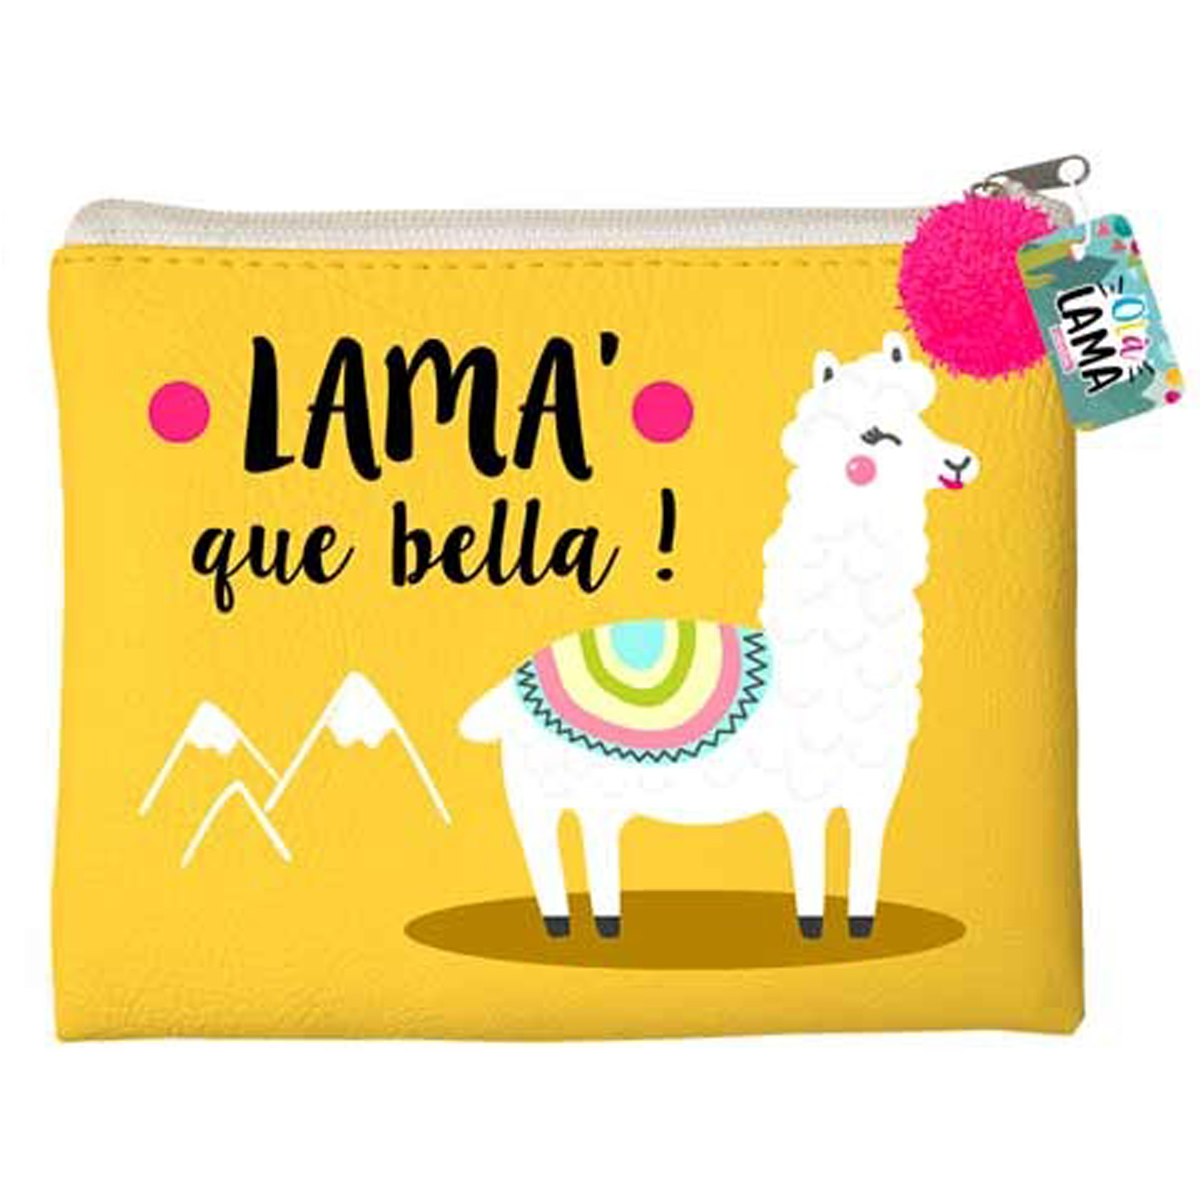 Trousse plate \'Lama Mania\' jaune (Lama\' que bella !) - 215x18 cm - [Q0848]